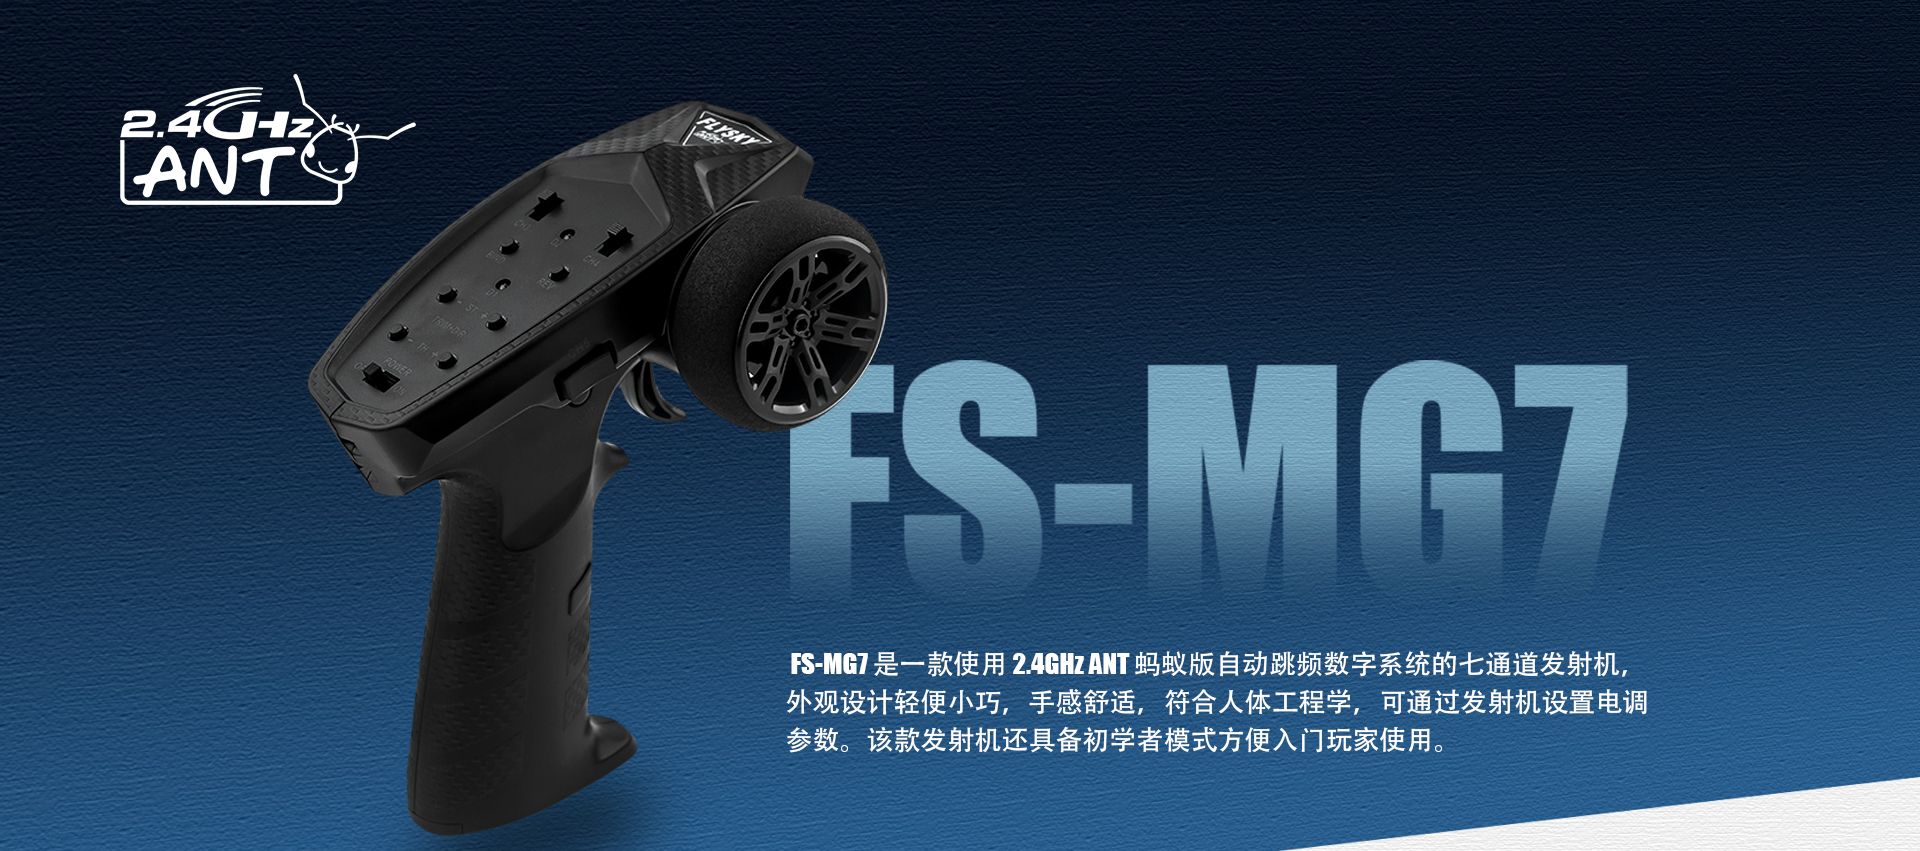 FS-MG7